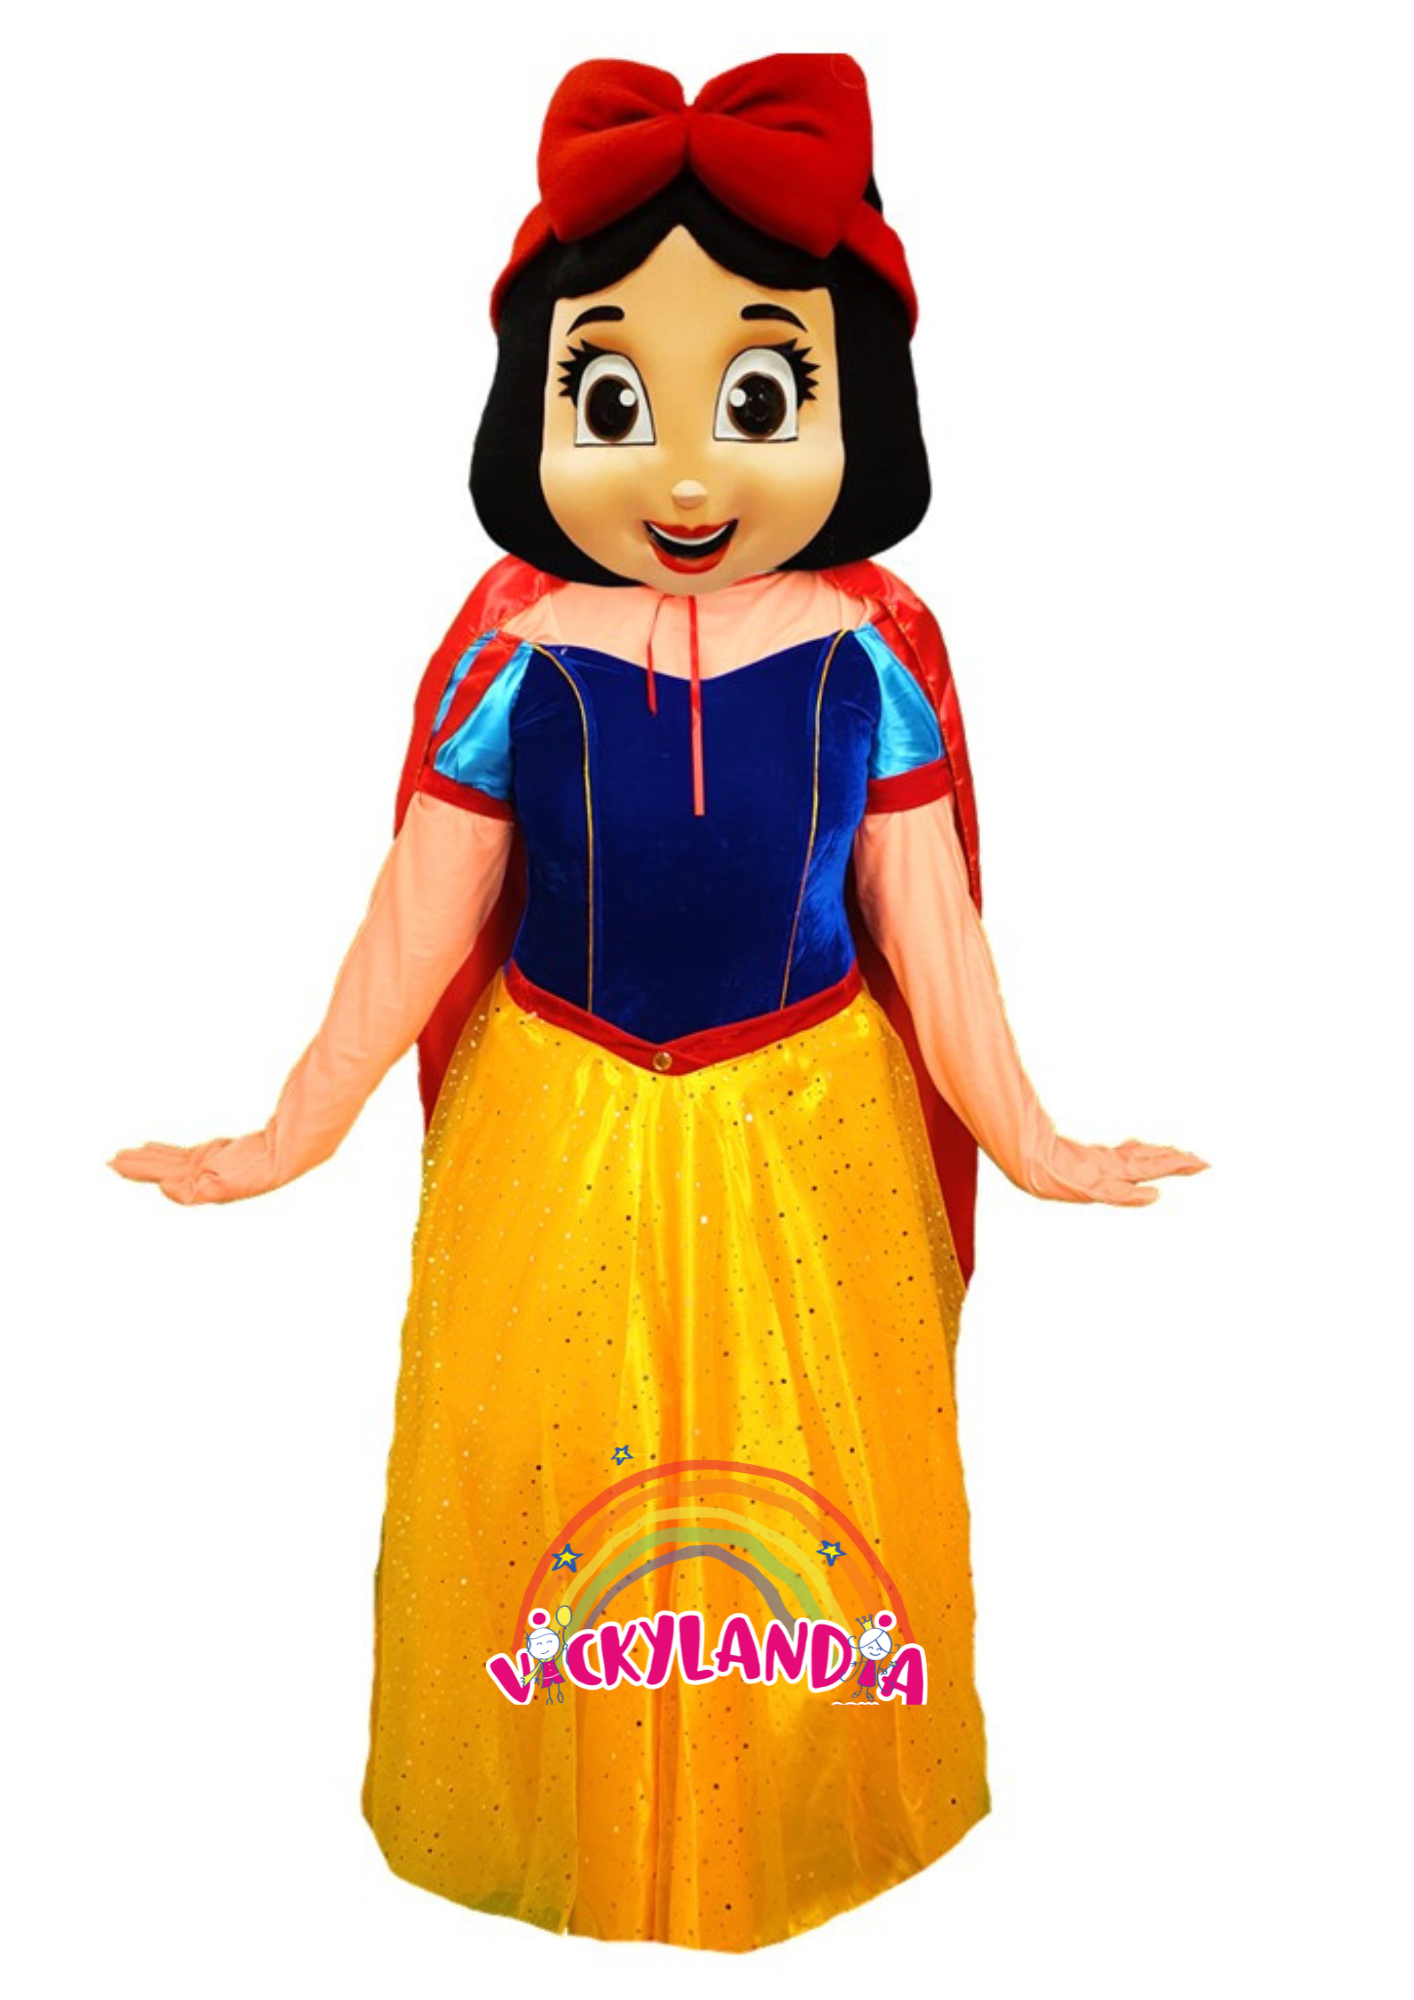 Descubre la magia de nuestro muñeco publicitario de Princesa Encantada en Vickylandia. Son disfraces cabezones perfectos para fiestas infantiles, shows, cumpleaños, estrategias publicitarias, espectáculos, cabalgatas y cualquier tipo de evento.